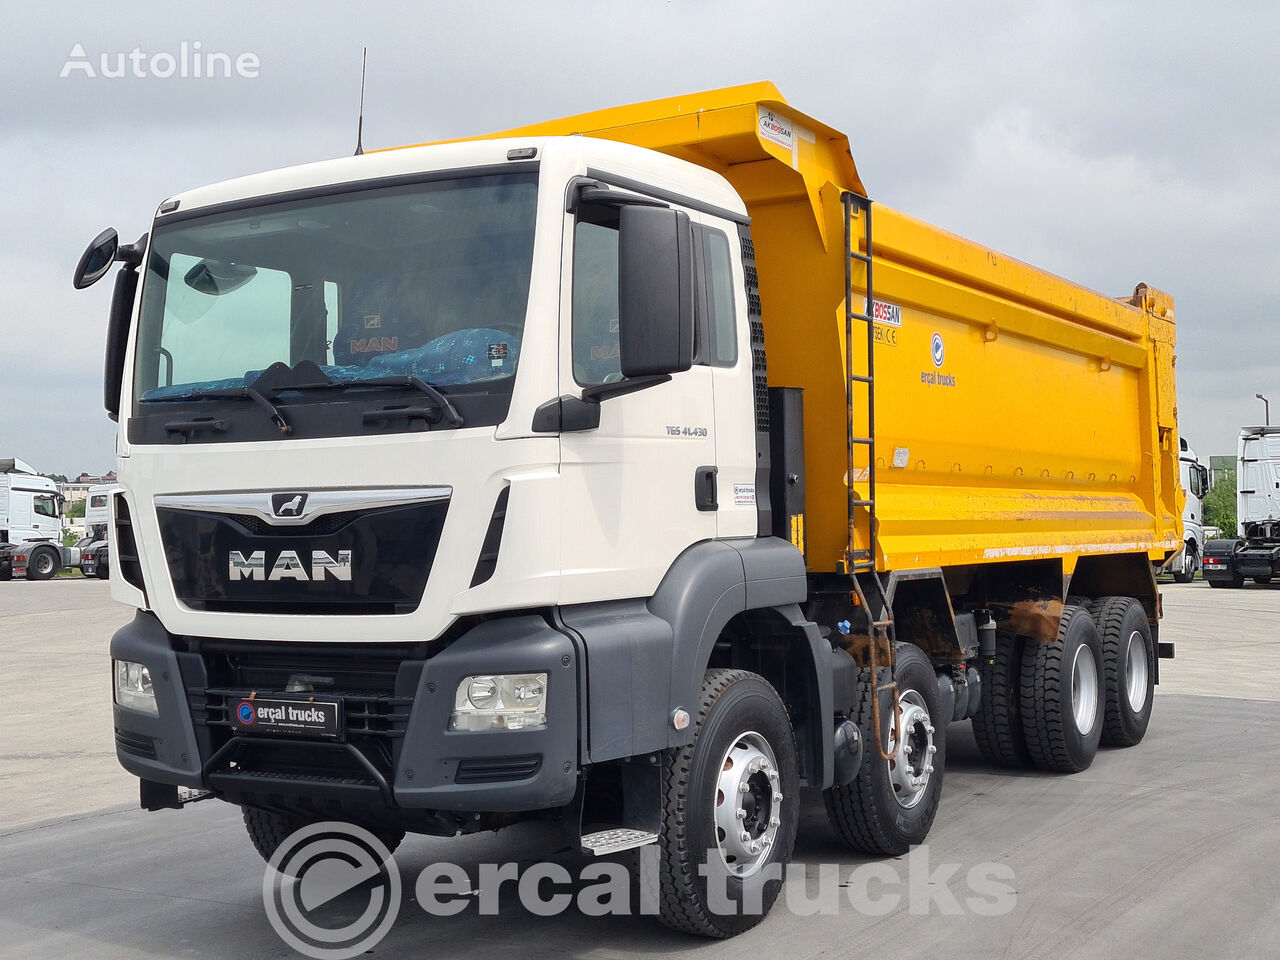 MAN 2020 MAN TGS 41.430/AUTO AC-EURO6 8X4 HARDOX TIPPER dump truck